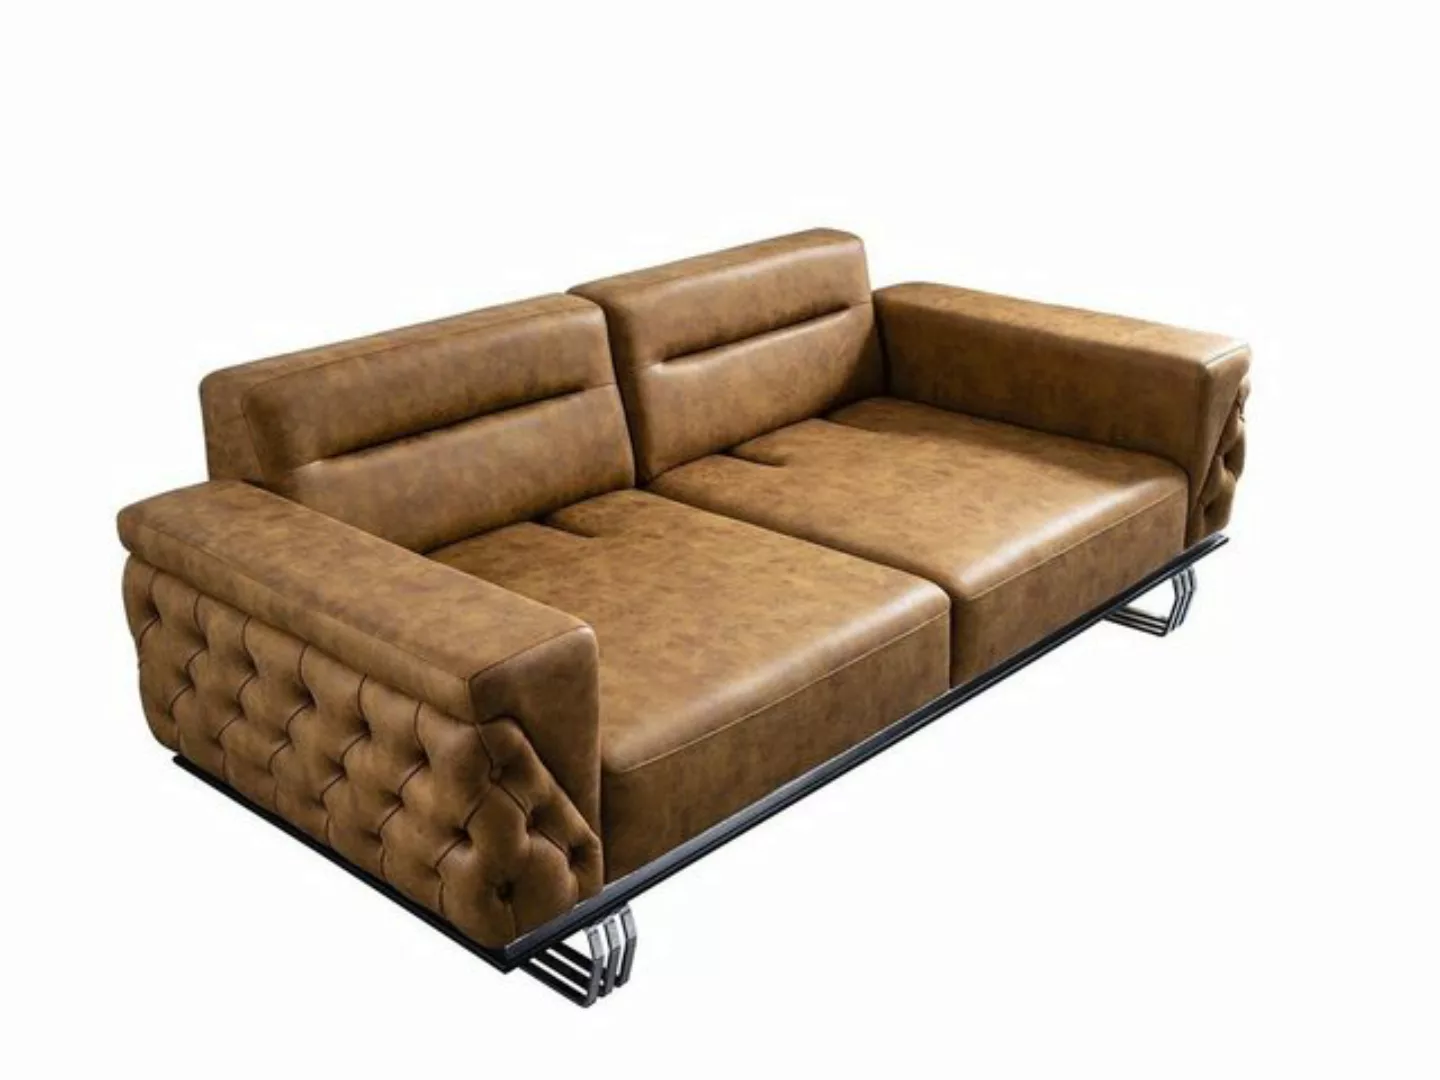 JVmoebel 3-Sitzer Sofa 3 Sitzer Wohnzimmer Design Möbel Stil Modern Neu bra günstig online kaufen